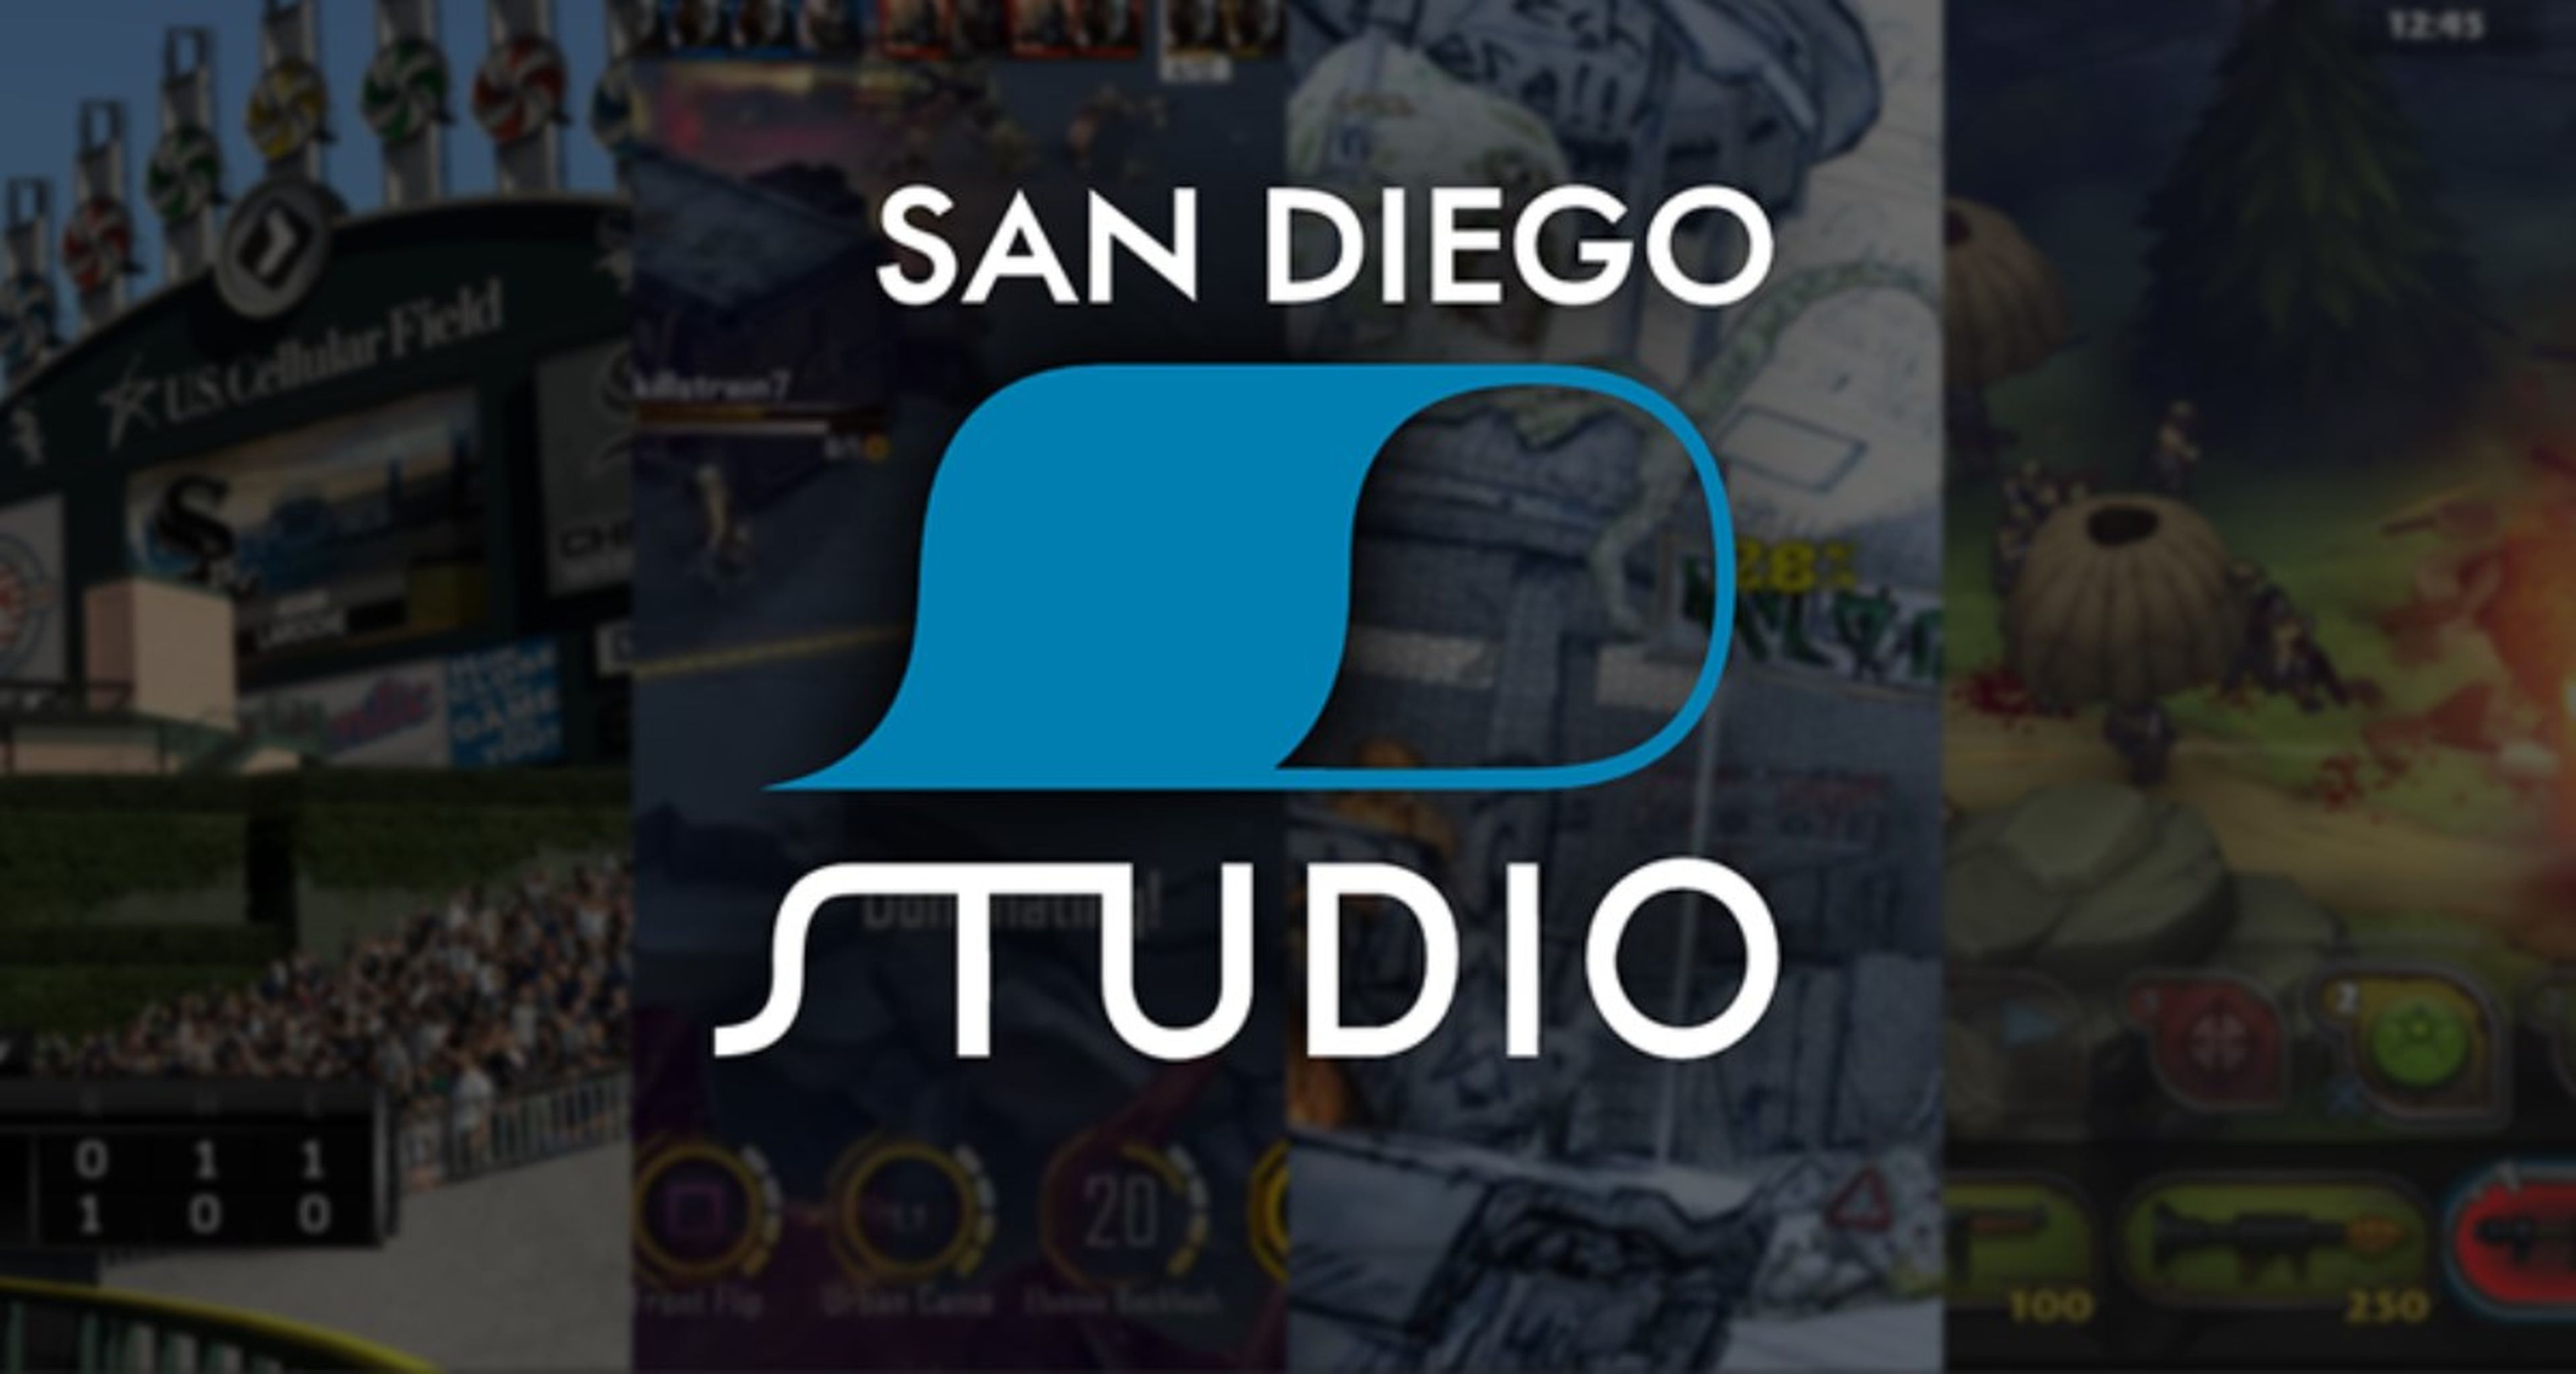 Sony San Diego Studio